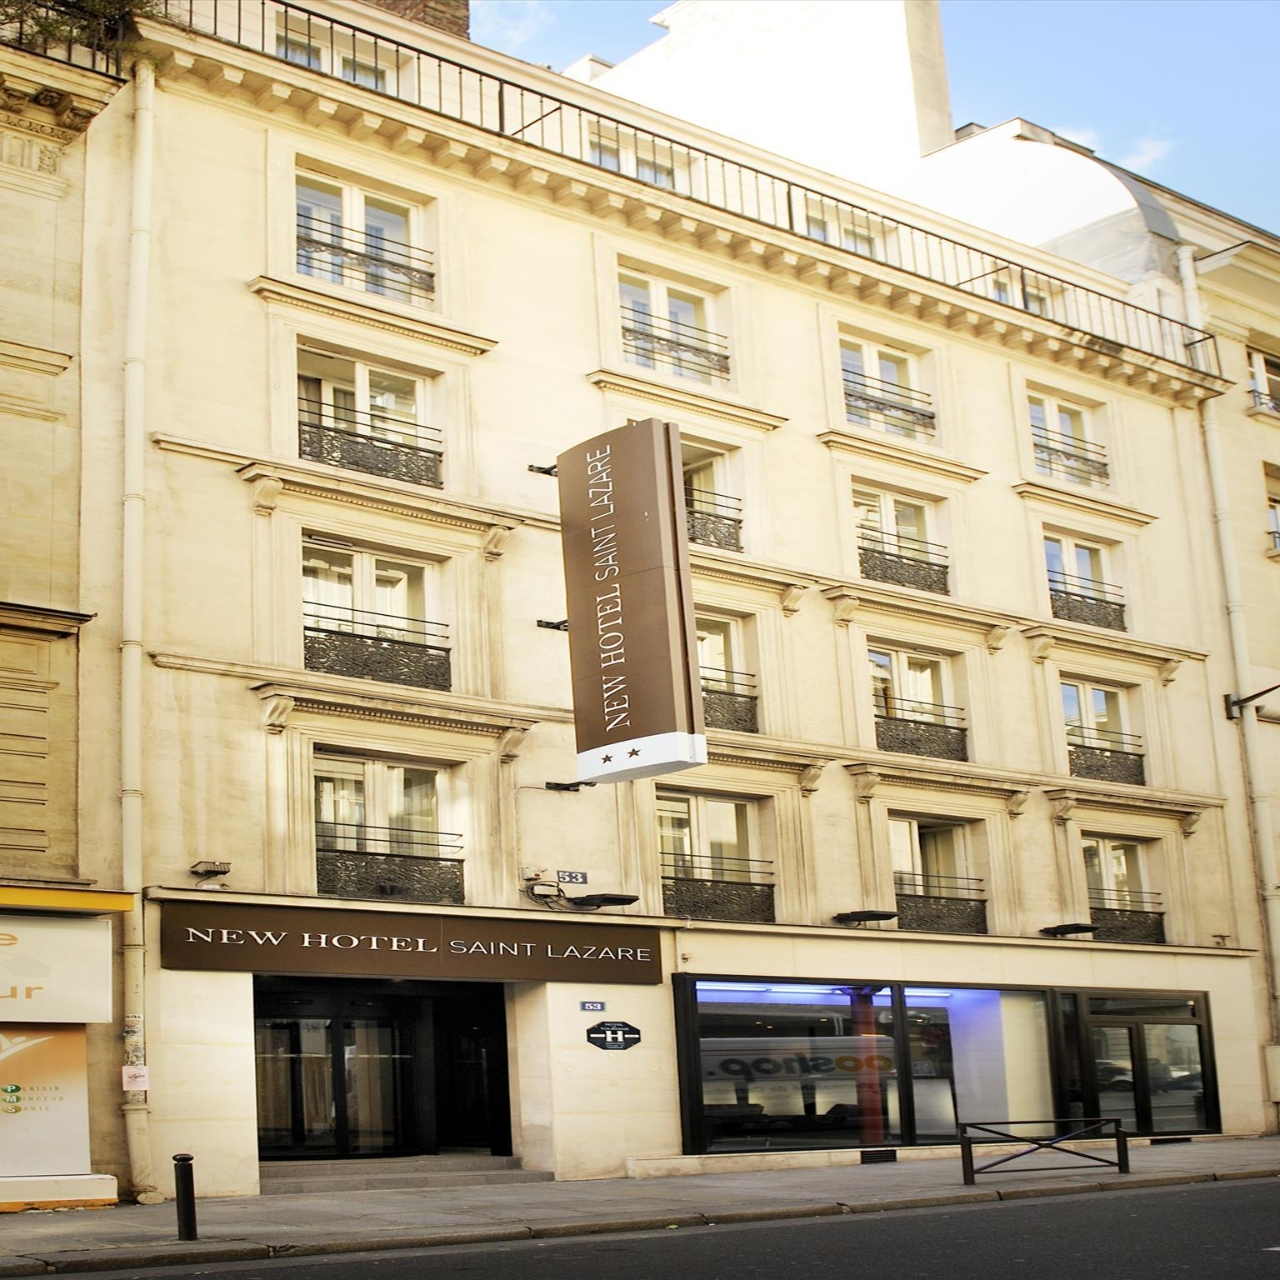 New Hotel Saint Lazare - 3 HRS star hotel in Paris (Île-de-France)